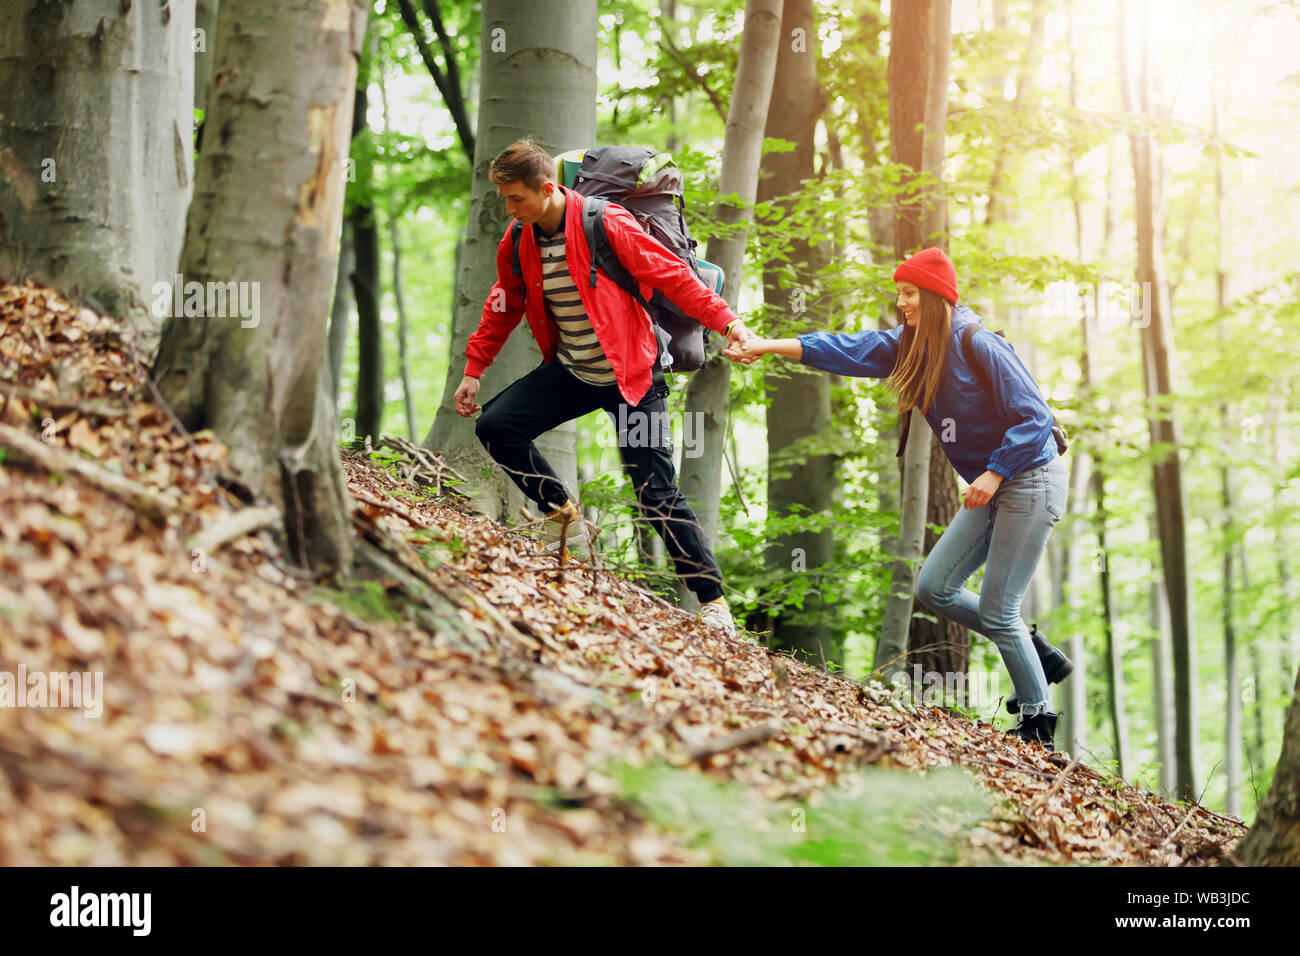 Guy randonneur donne une main à la jeune fille tout en marchant dans les montagnes, aide et amitié concept Banque D'Images